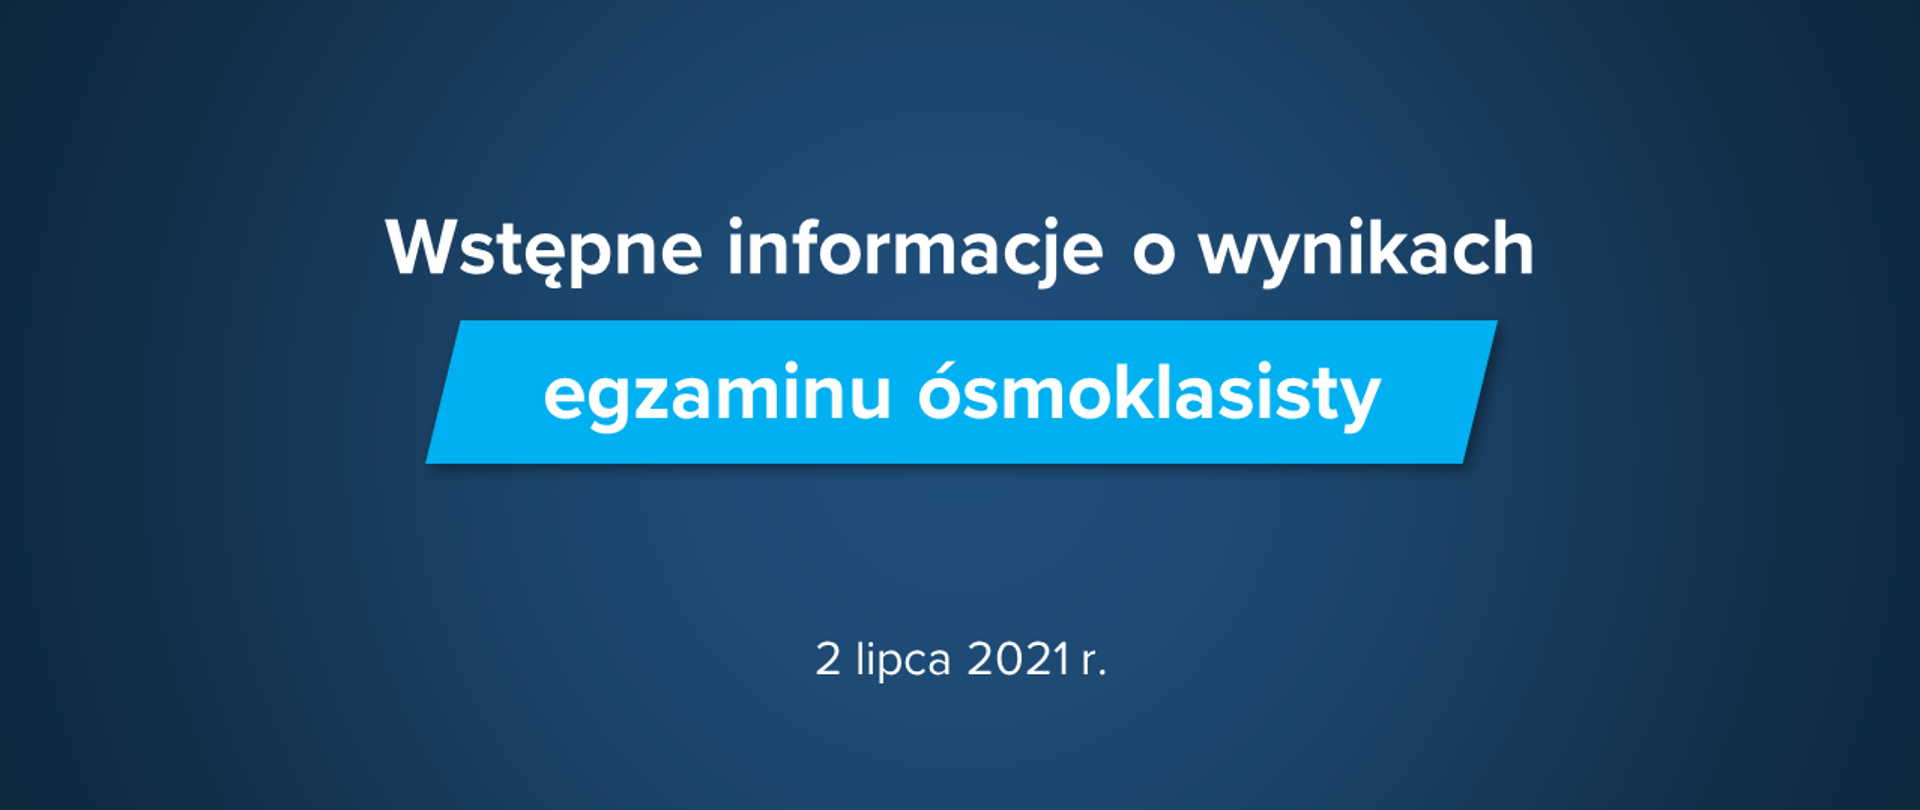 Grafika z tekstem: "Wstępne informacje o wynikach egzaminu ósmoklasisty – 2 lipca 2021 r."